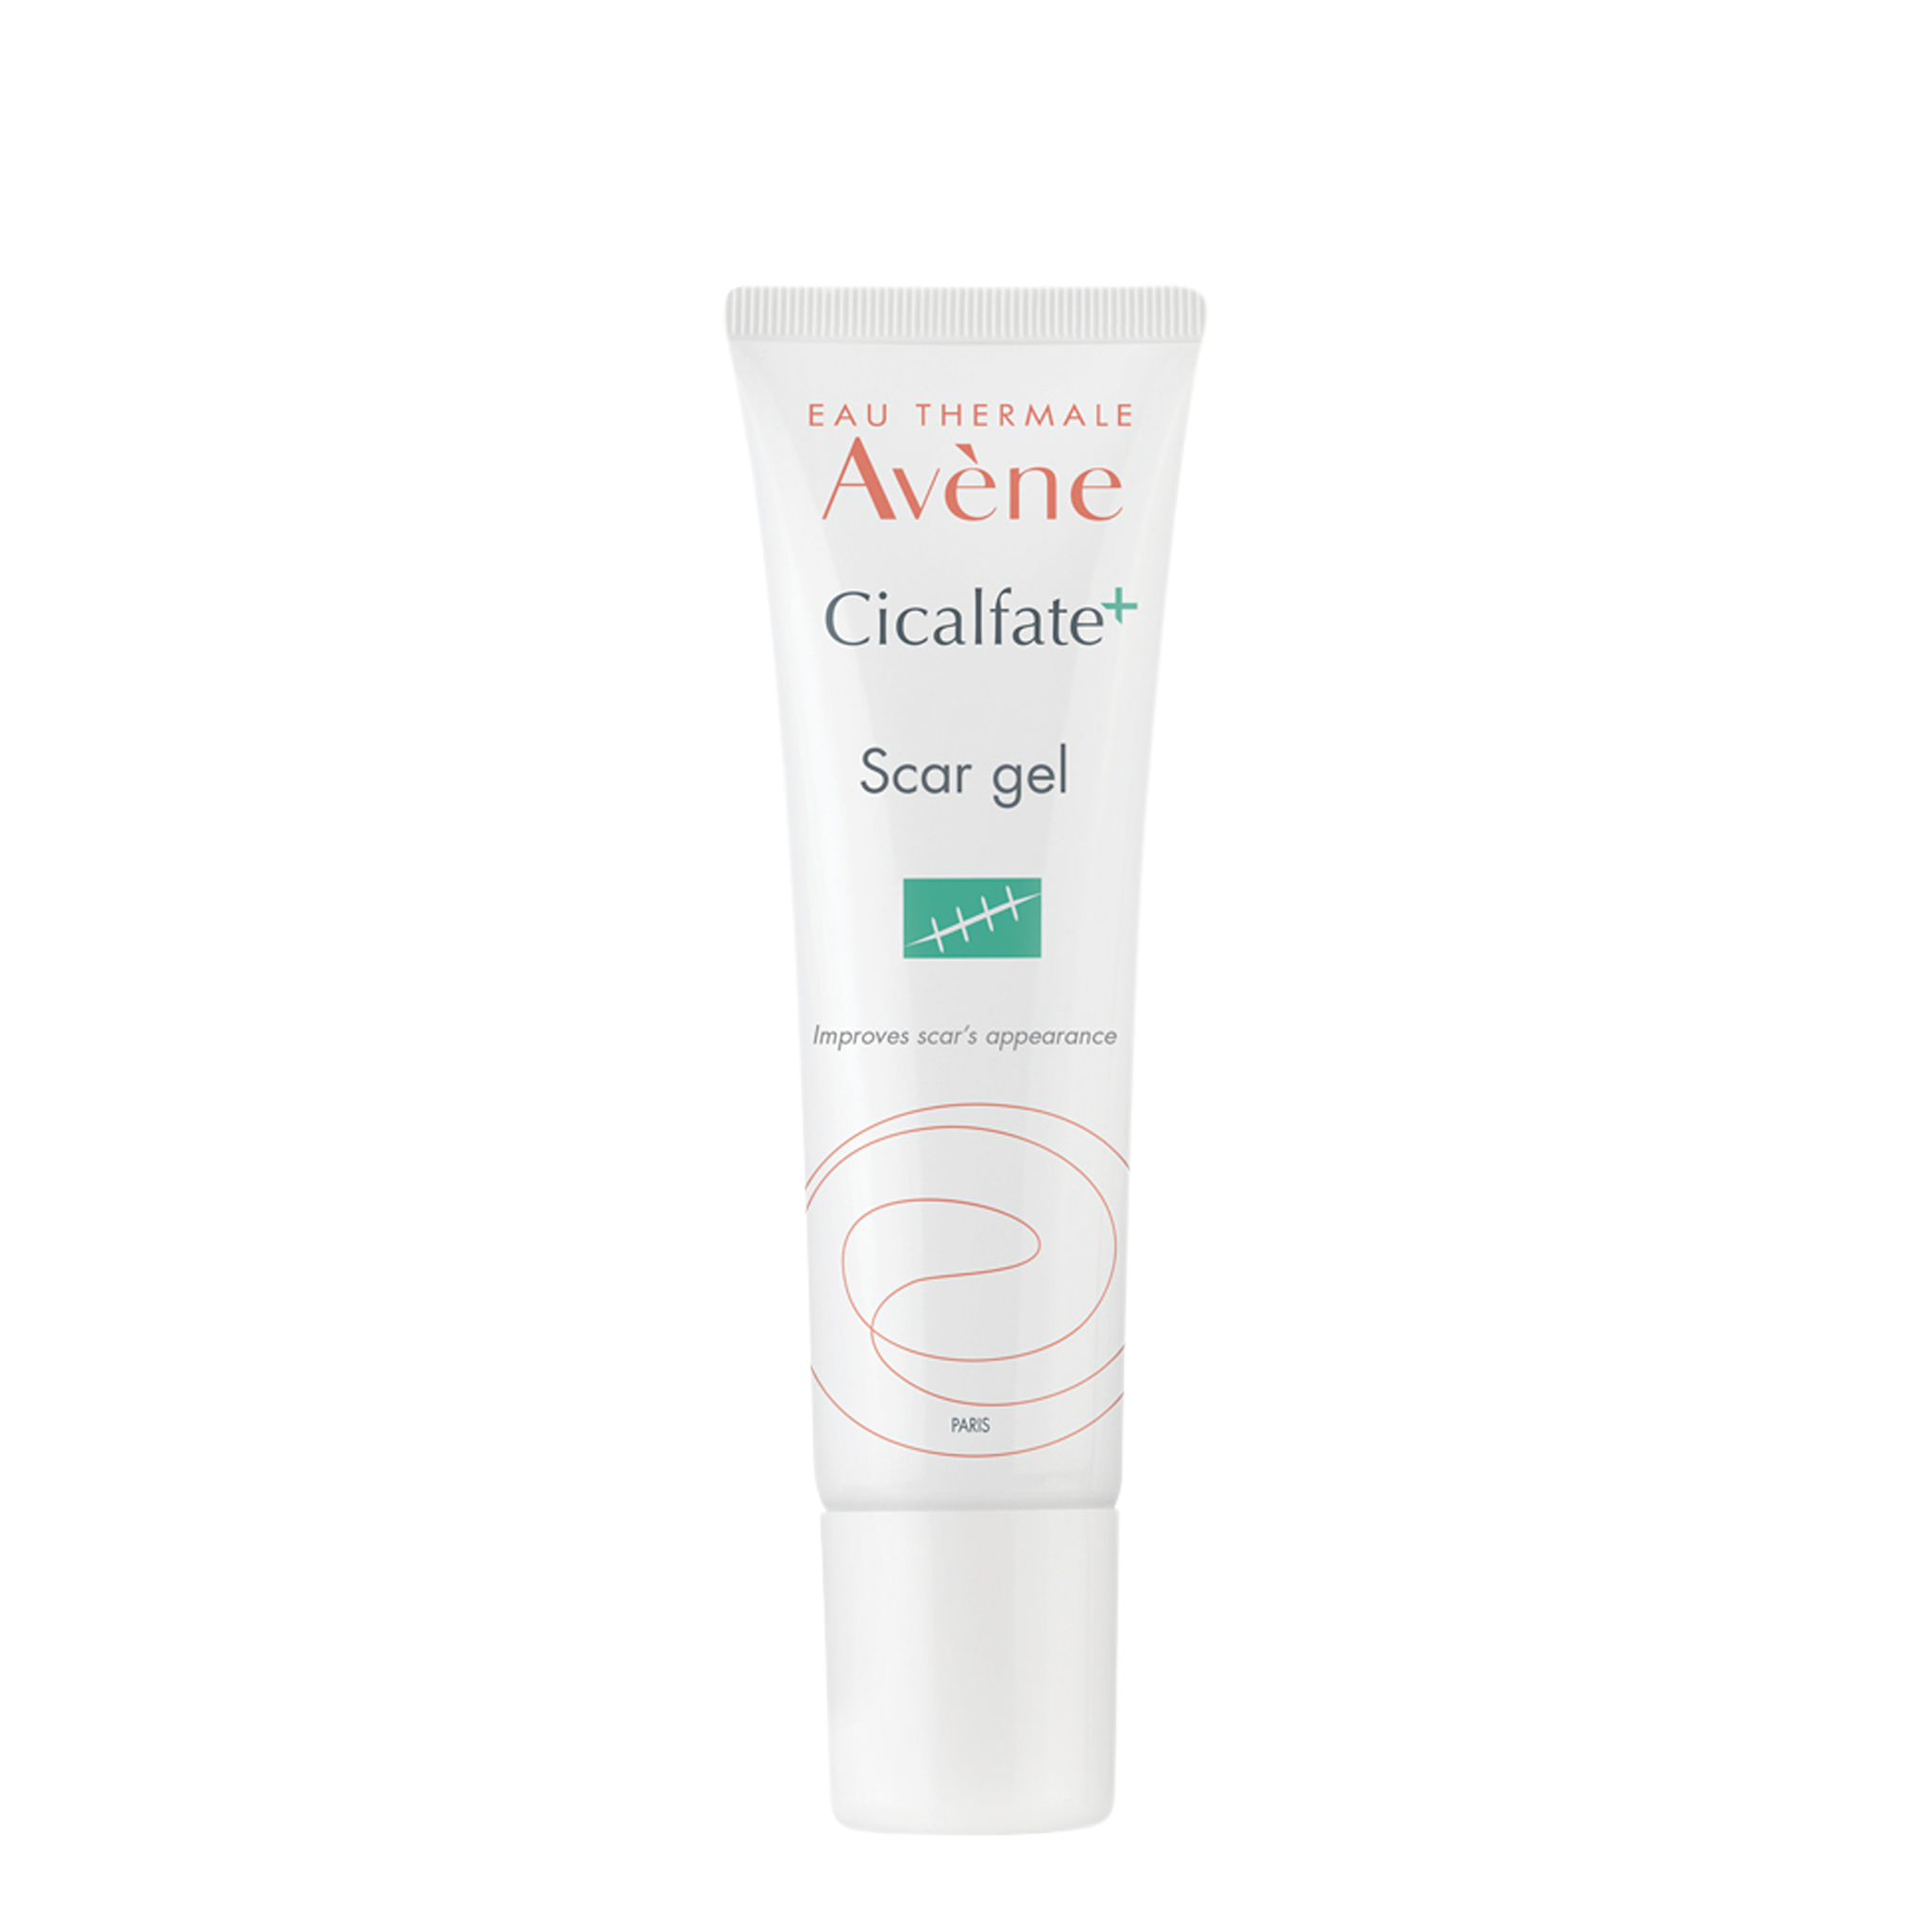 Avène Cicalfate+ Scar Gel 30ml - Anti-scarring Treatment